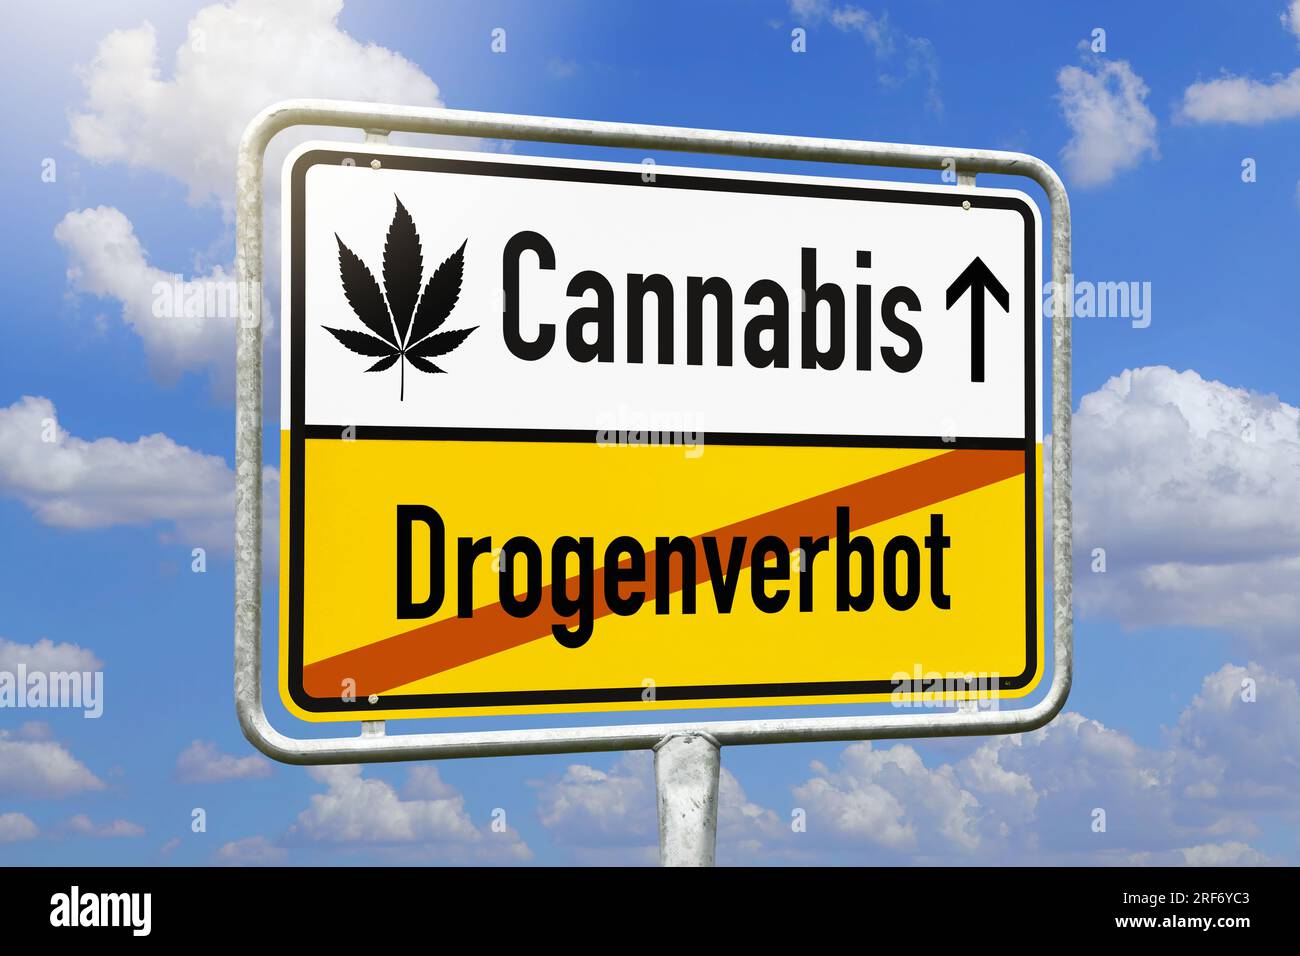 FOTOMONTAGE, Schild mit Aufschrift Cannabis und durchgestrichener Aufschrift Drogenverbot Foto Stock